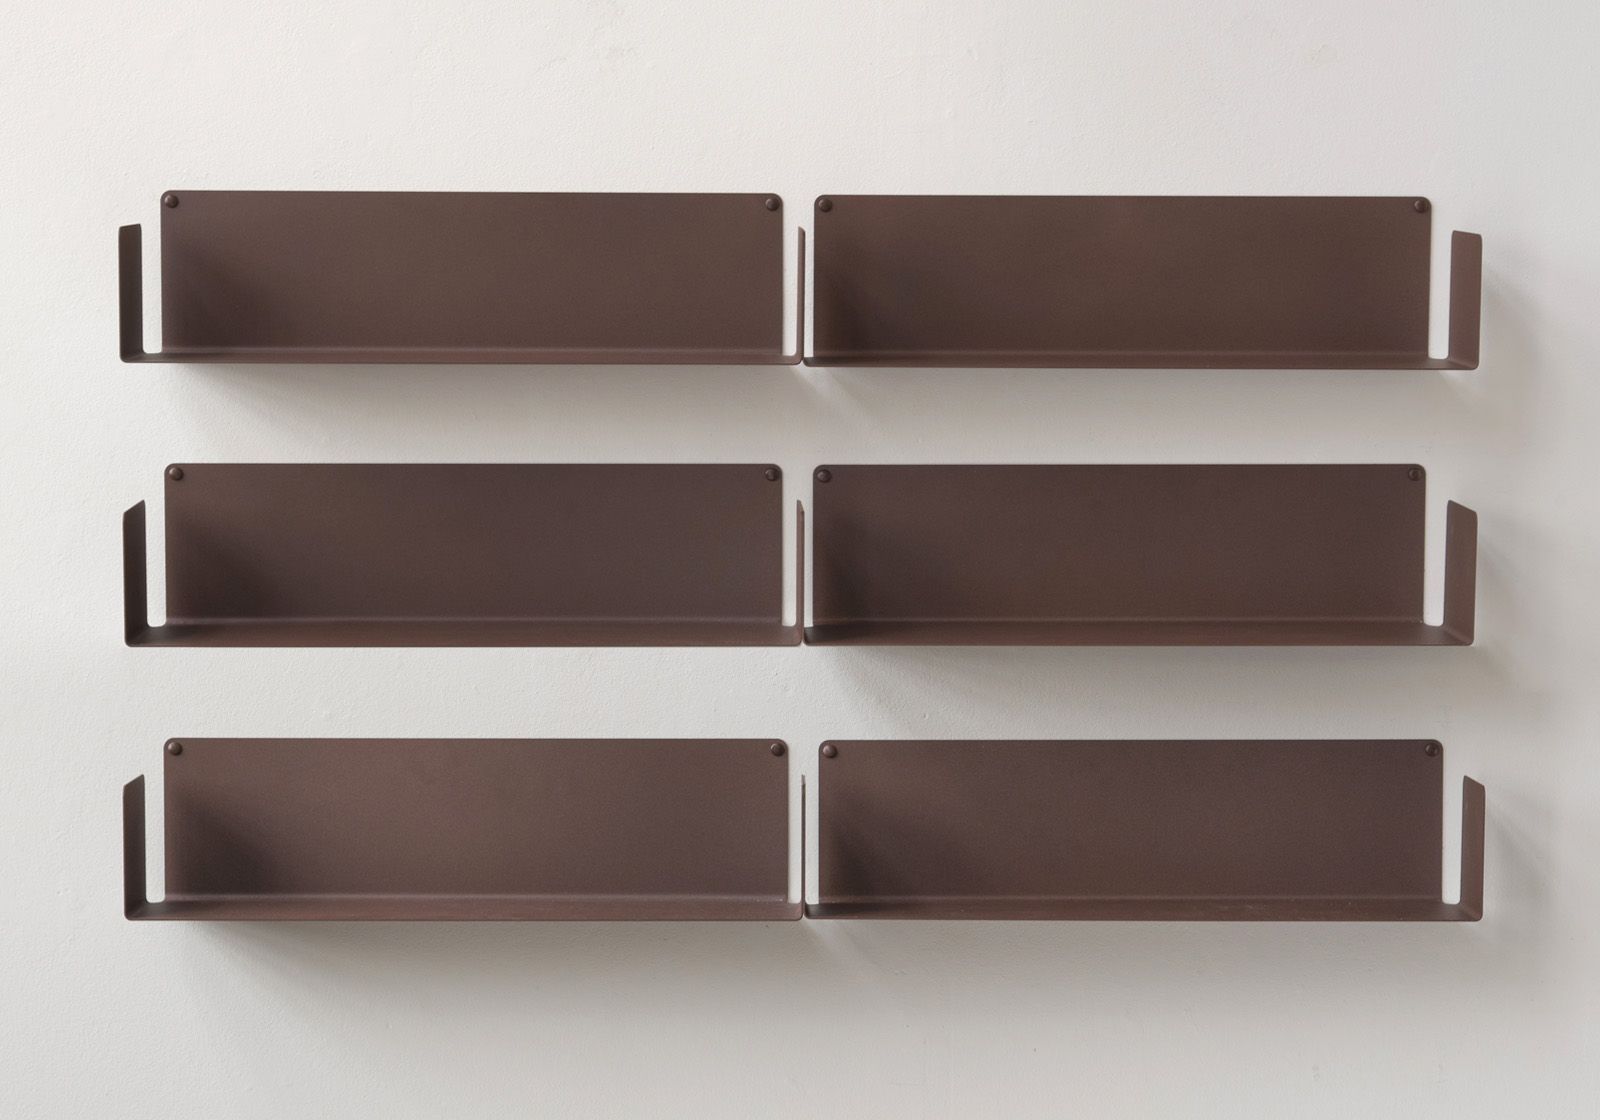 Floating shelf rust colour - 45 x 15 cm - Lot de 2 Rust color shelves - 6